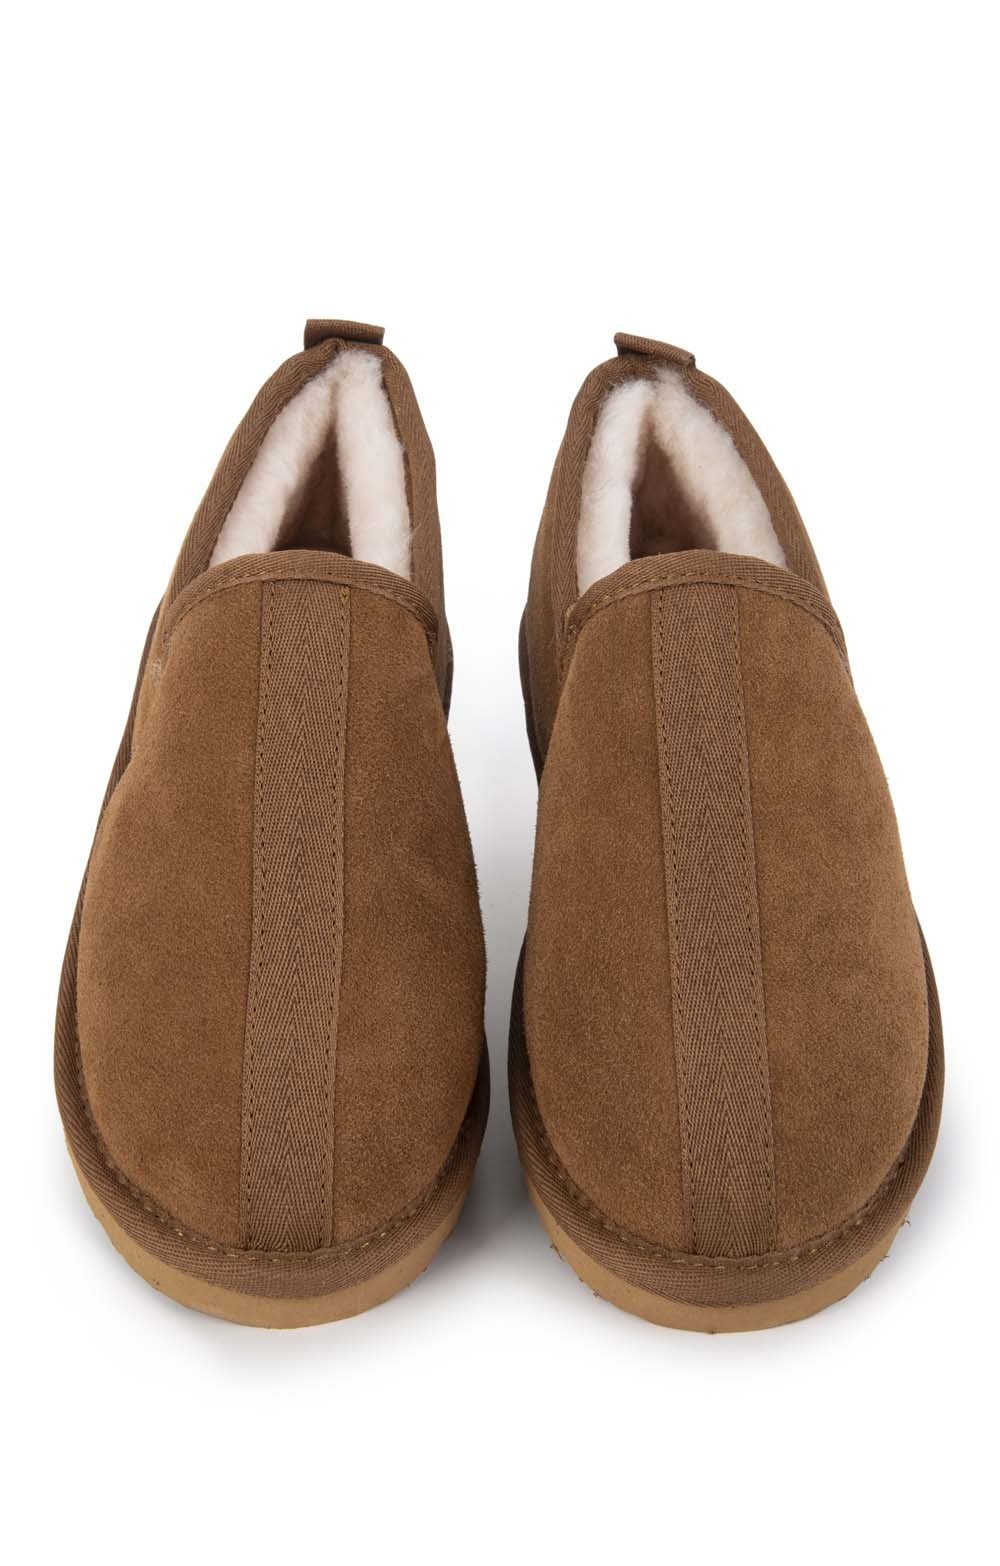 sheepskin slippers outdoor sole